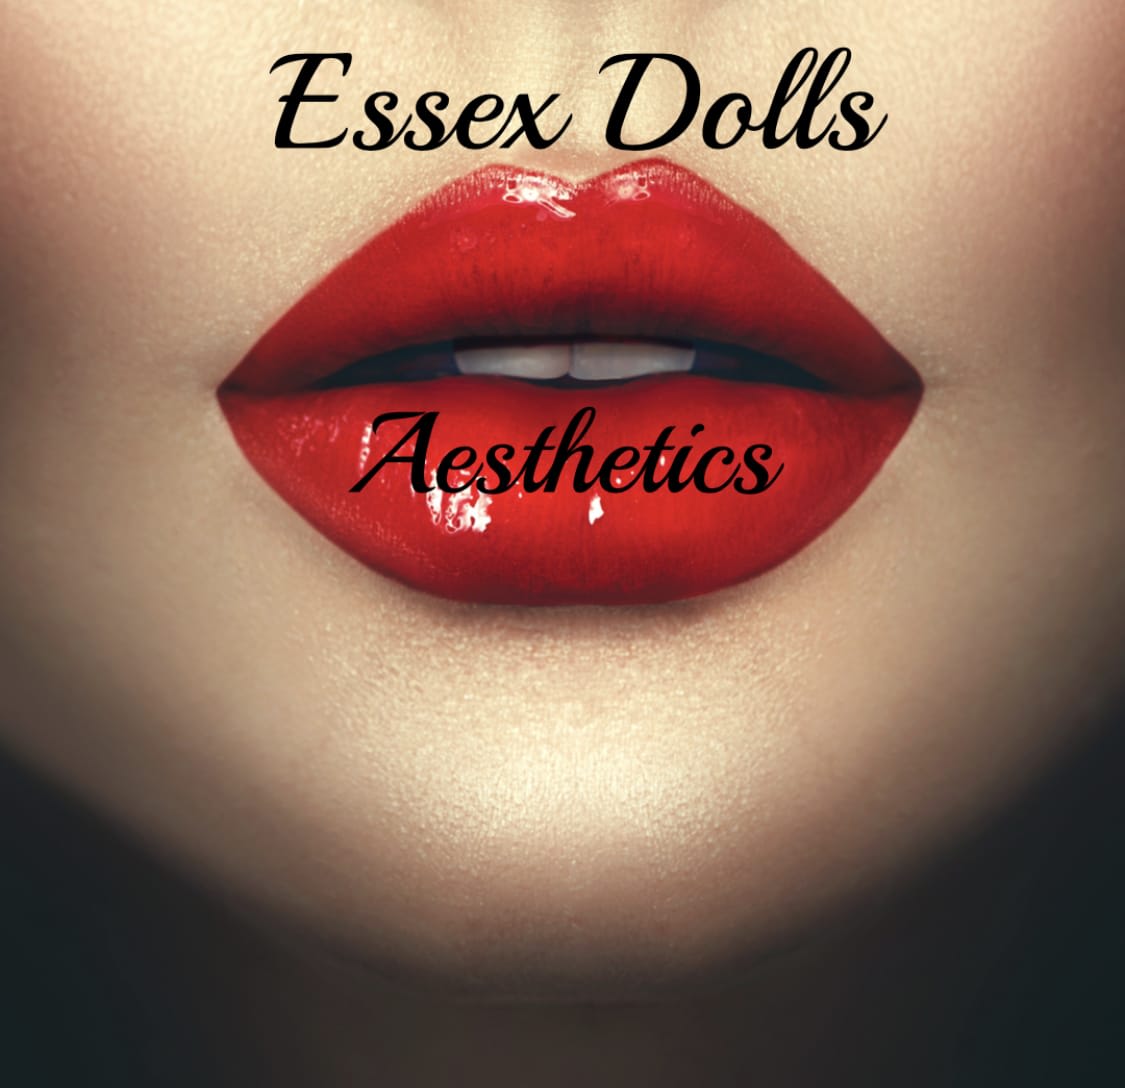 Essex Dolls Aesthetics